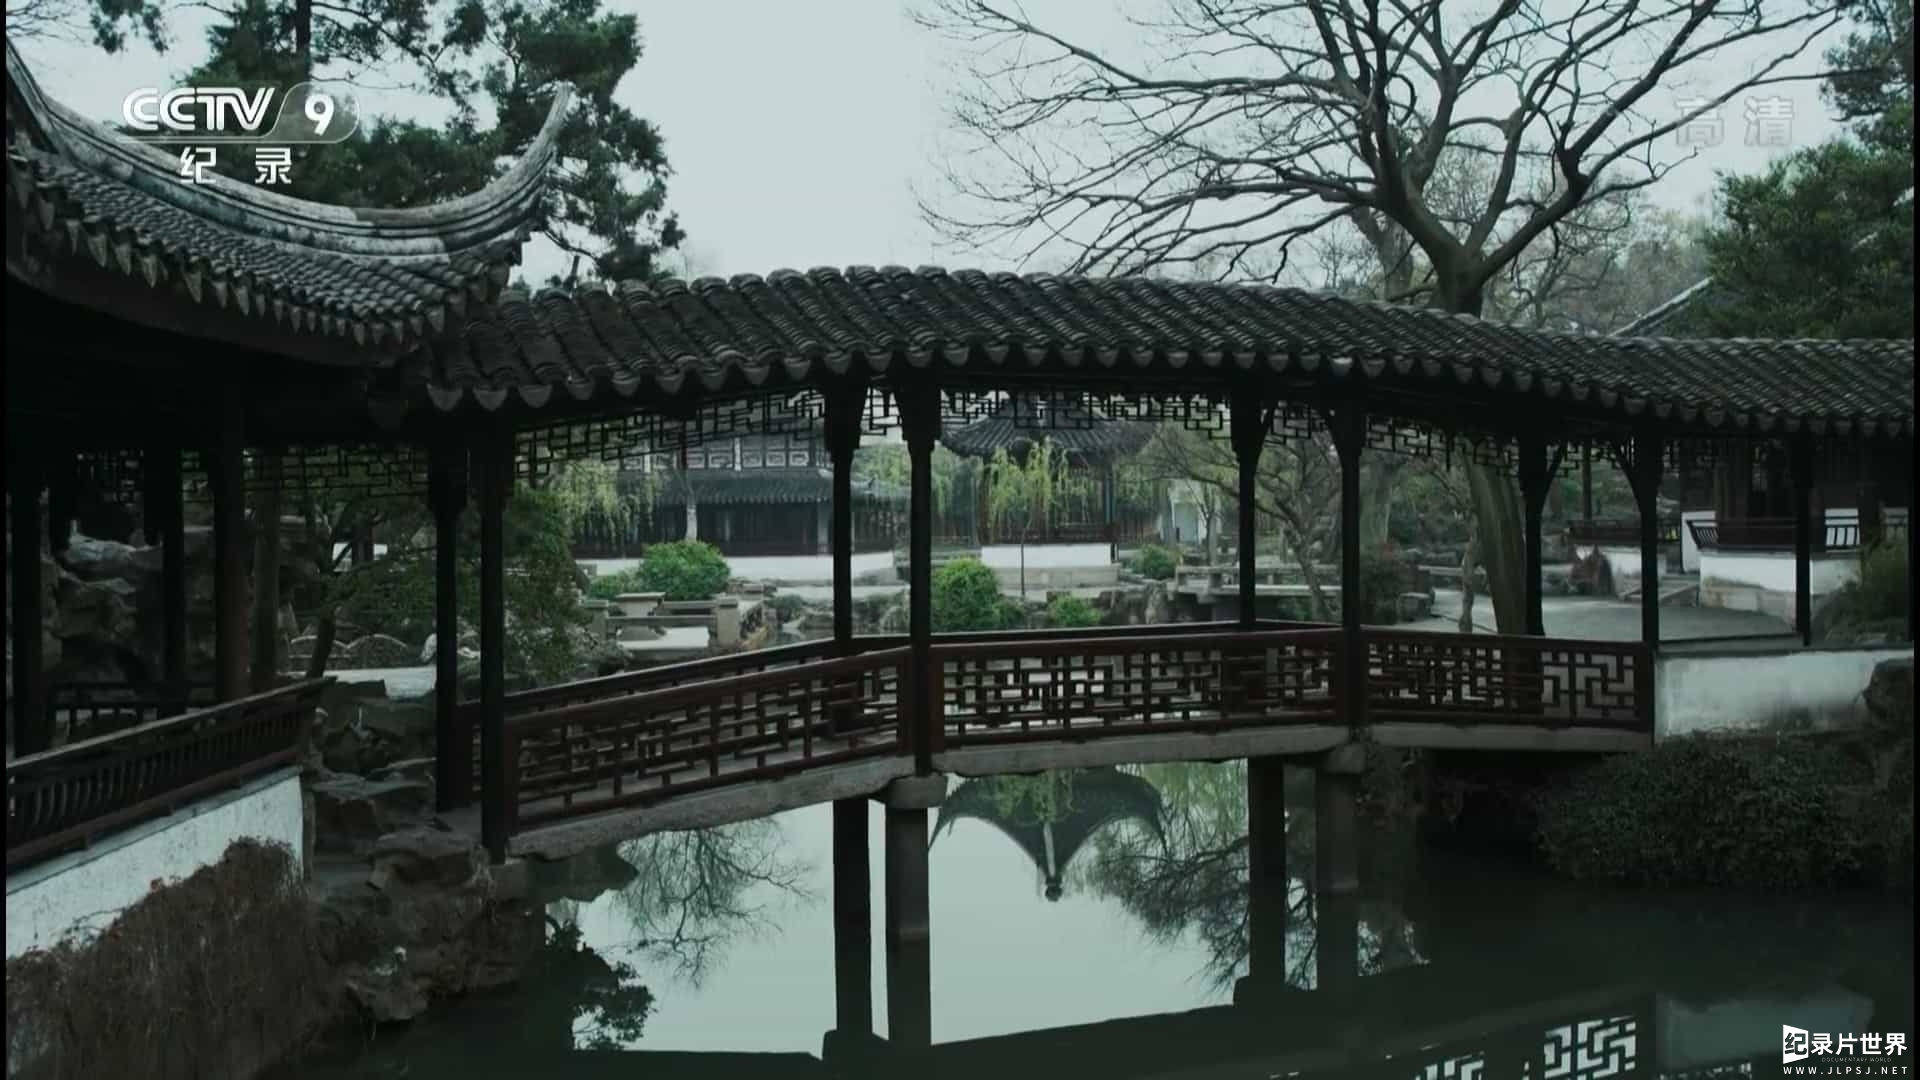 央视纪录片《园林:长城之内是花园 Chinese Garden》